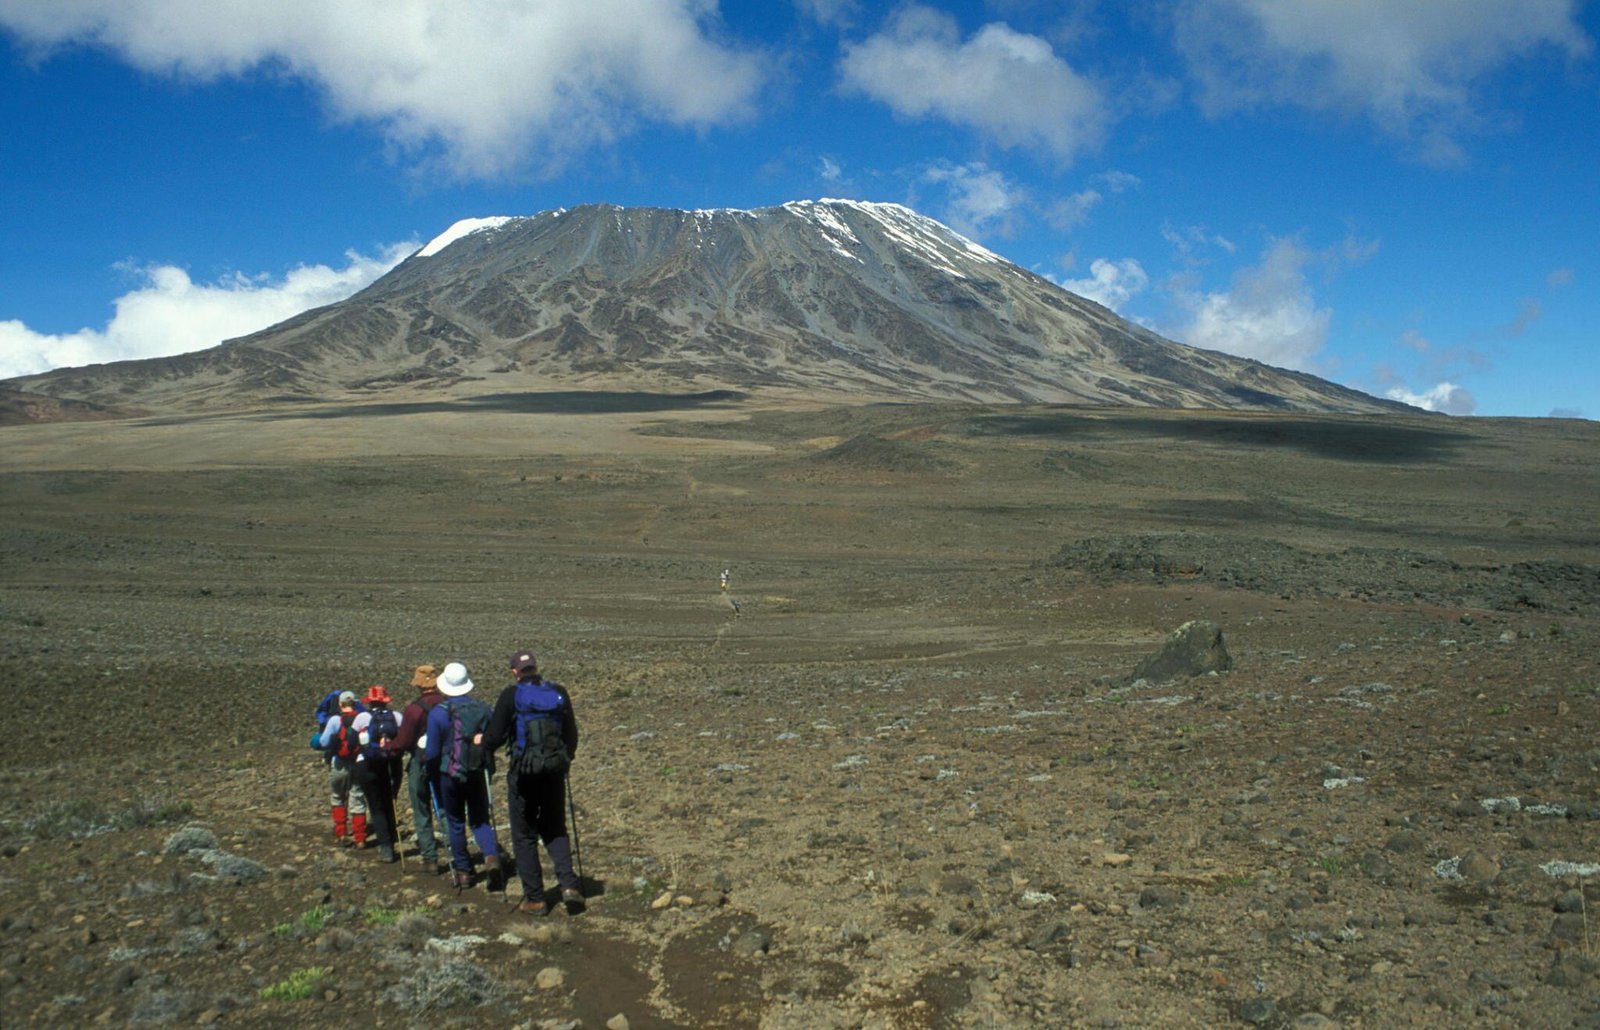 Kilimanjaro Day Hike From Moshi | Kilimanjaro Marangu Route